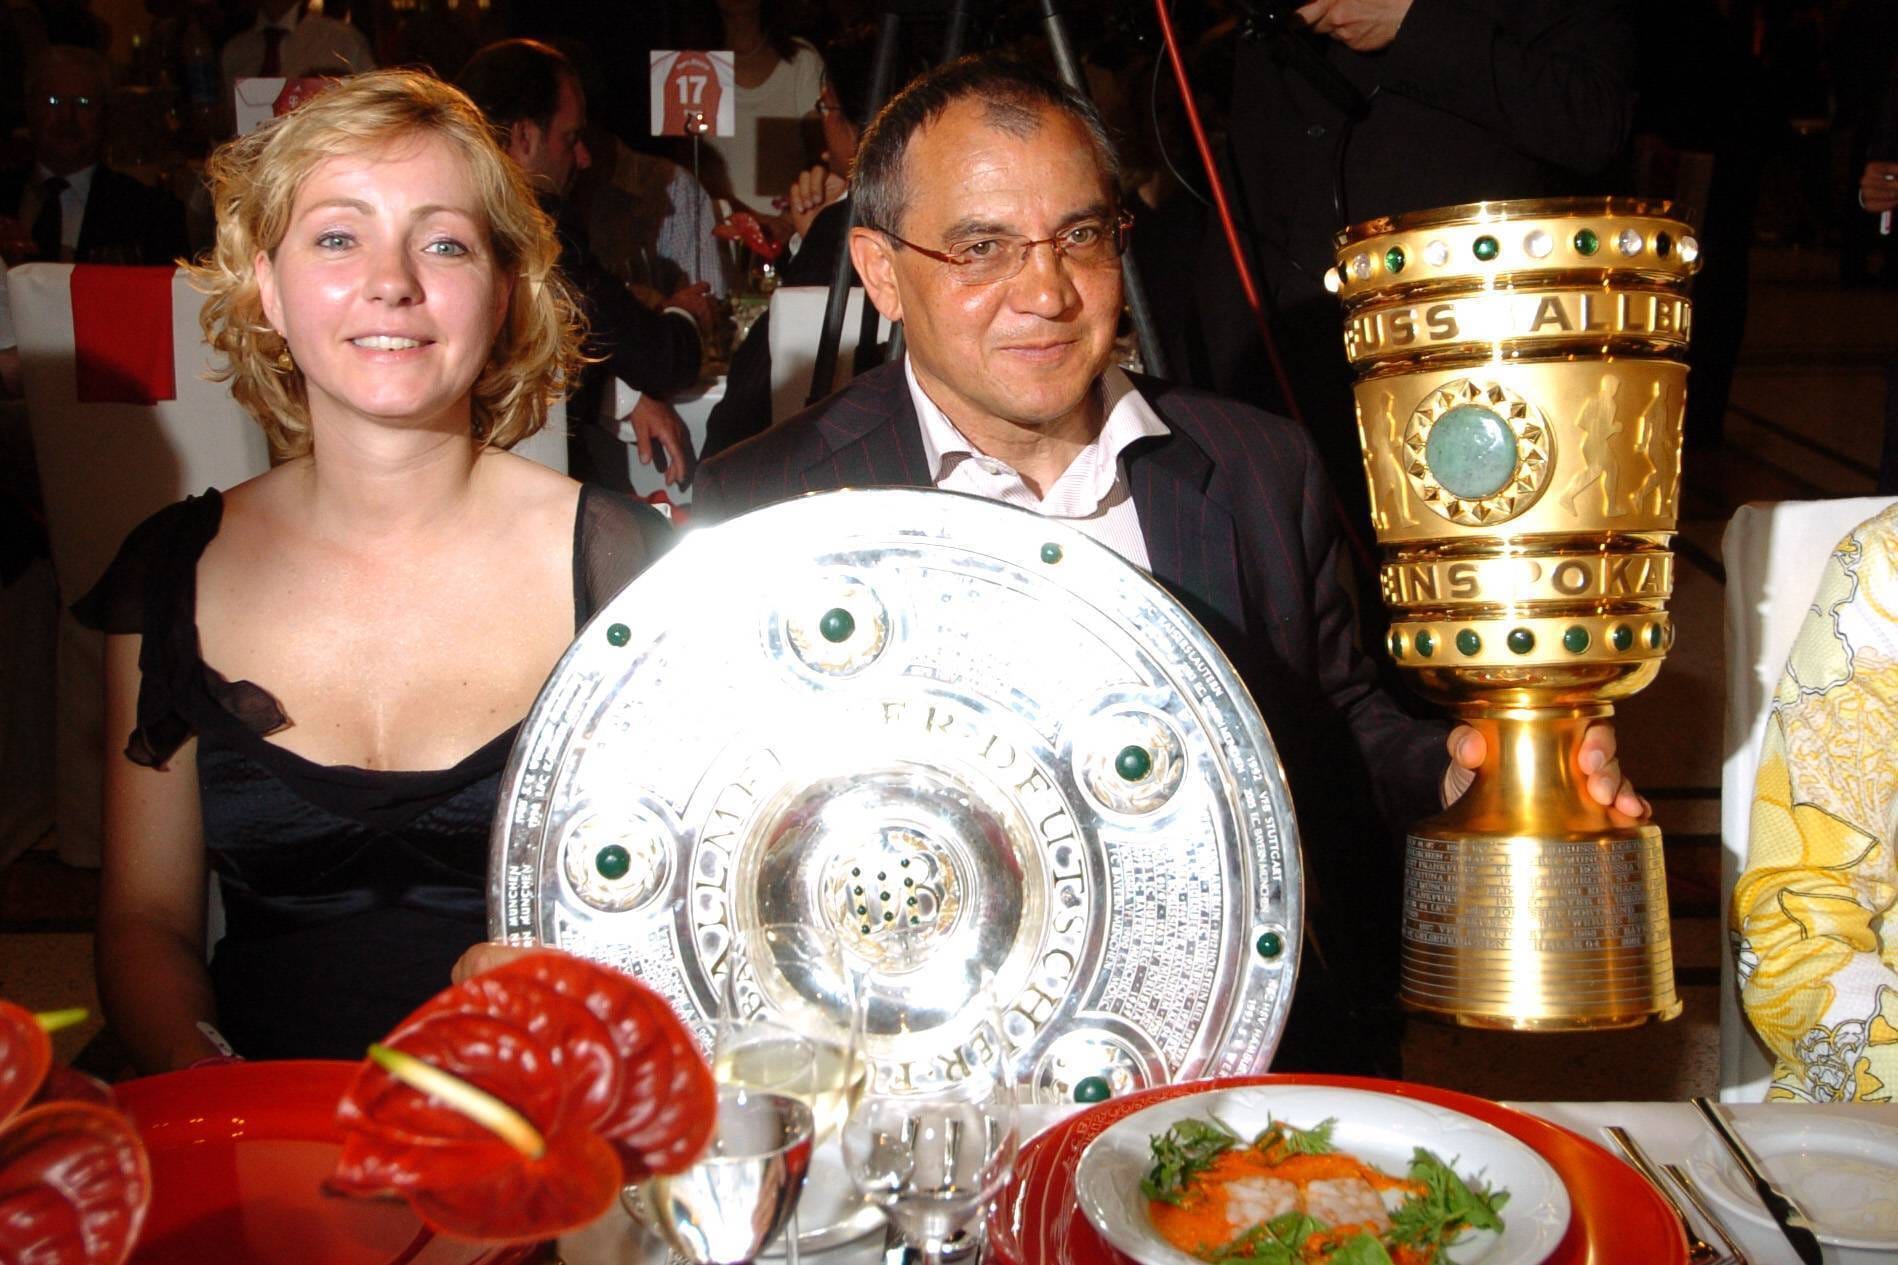 Bayern München – Juni 2004 bis Januar 2007: Der Rekordmeister rief im Jahr 2005. Erstmals übernahm Magath eine Mannschaft zu Saisonbeginn. Mit den Bayern holte er 2005 und 2006 jeweils das Double. Das doppelte Double hatte zuvor noch kein Trainer geschafft. Im Bild präsentiert er neben seiner Frau Nicola stolz den DFB-Pokal und die Meisterschale.